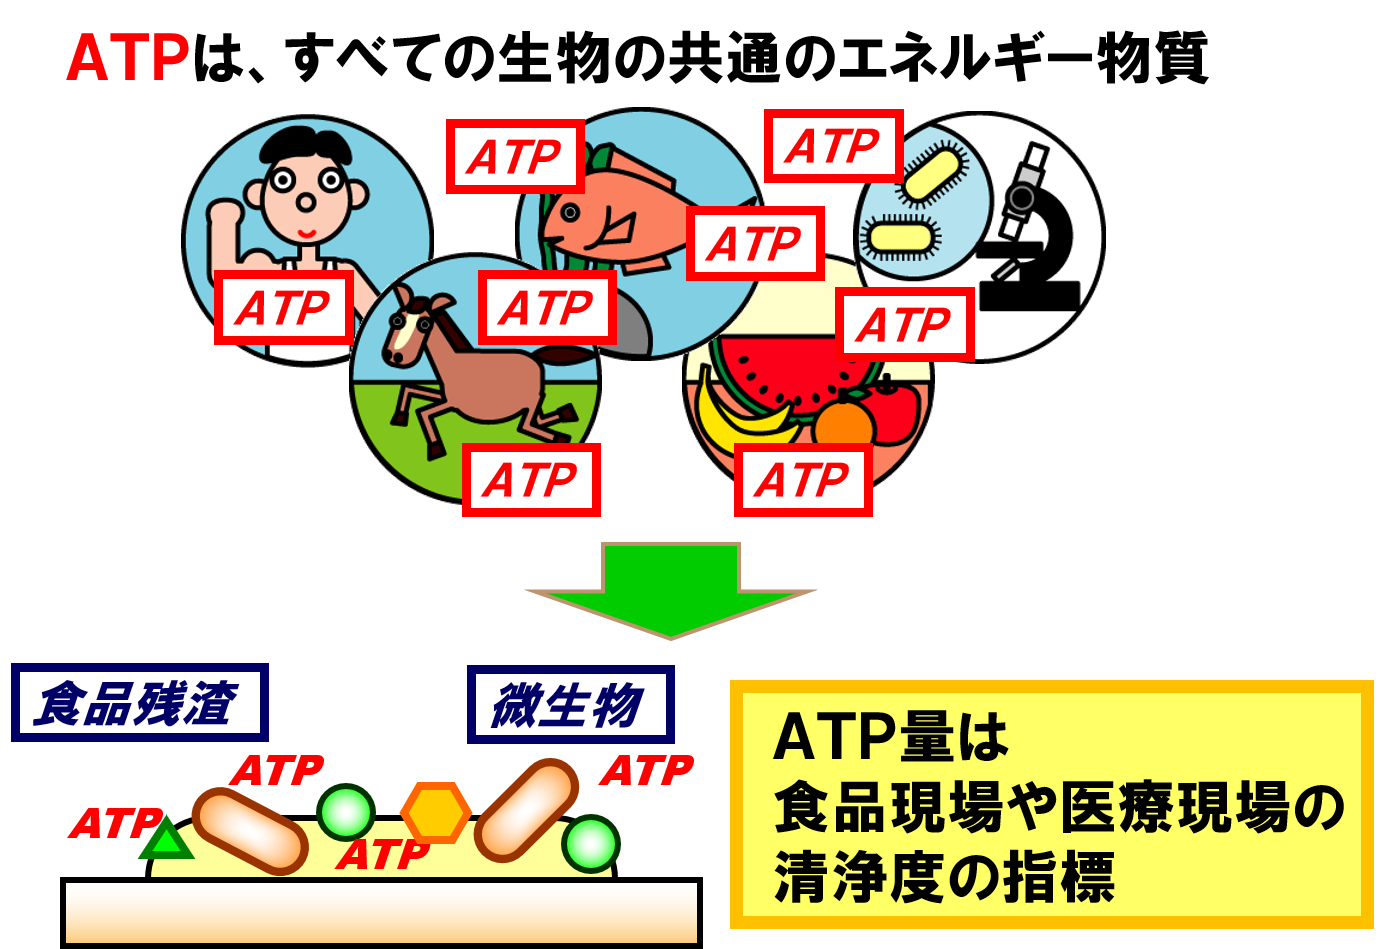 図１：ATP（アデノシン3リン酸）とは